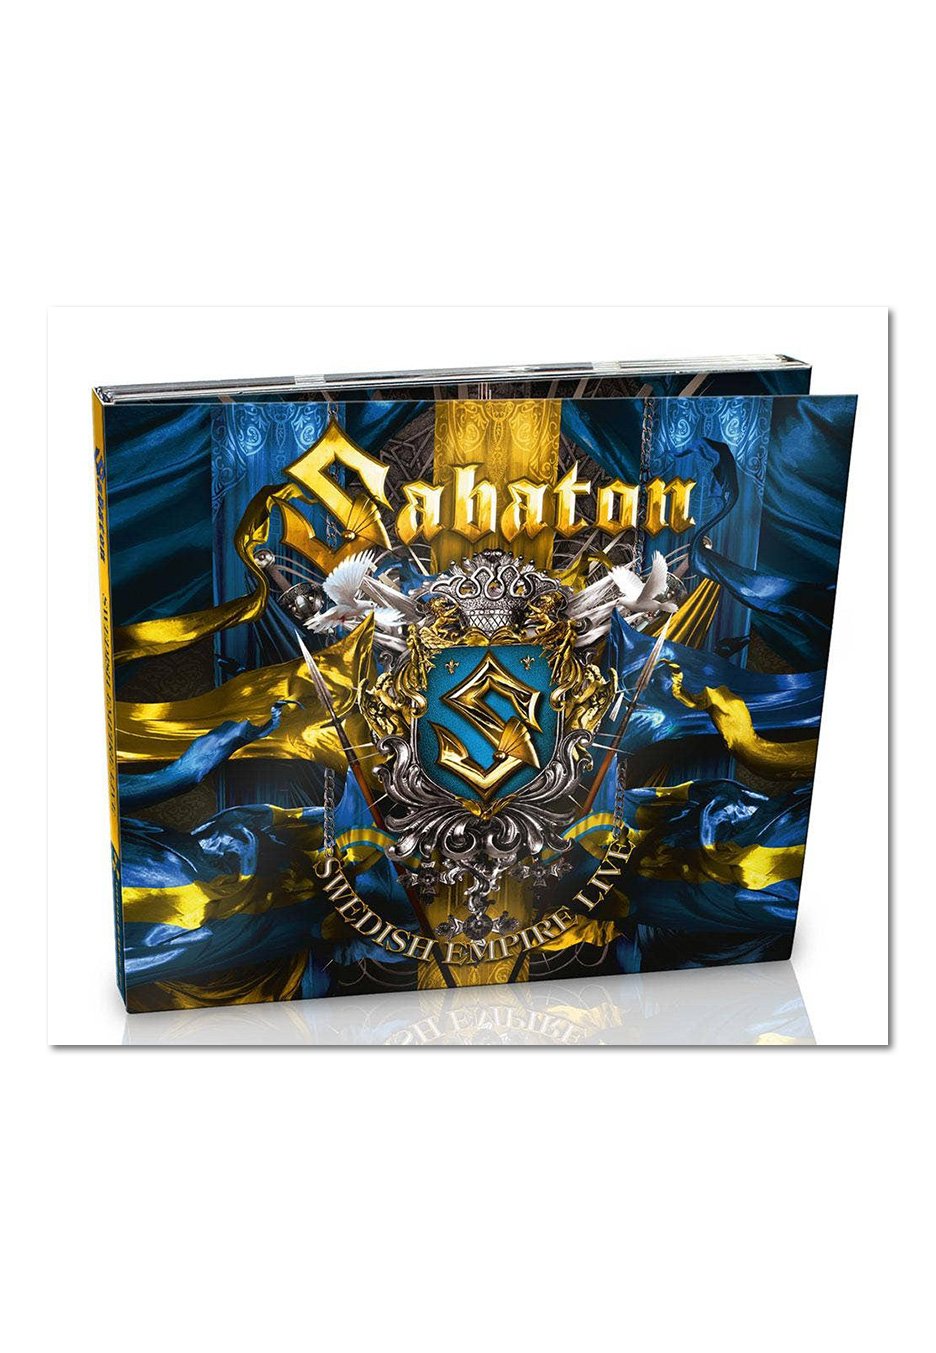 Sabaton - Swedish Empire Live - Digipak CD